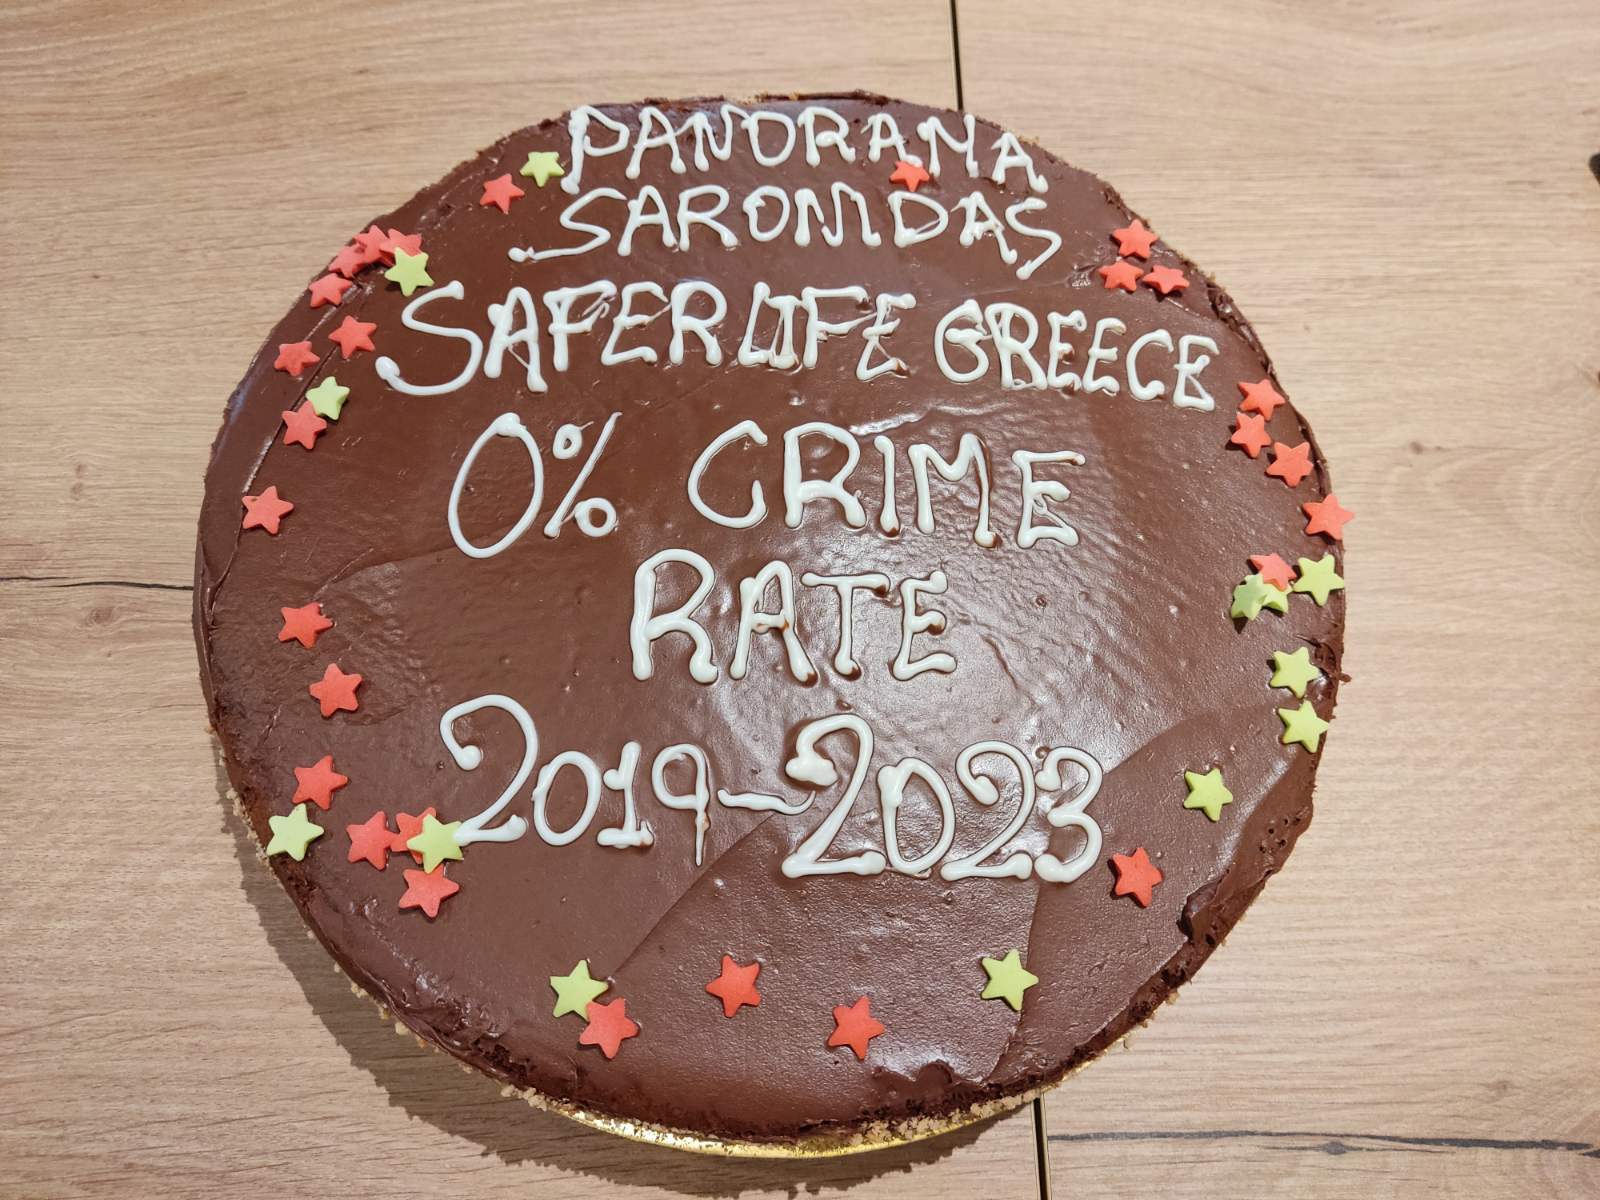 Η κοπή της πίτας του Safer Life Greece και του «Παρατηρητή της Γειτονιάς» του Πανοράματος Σαρωνίδας